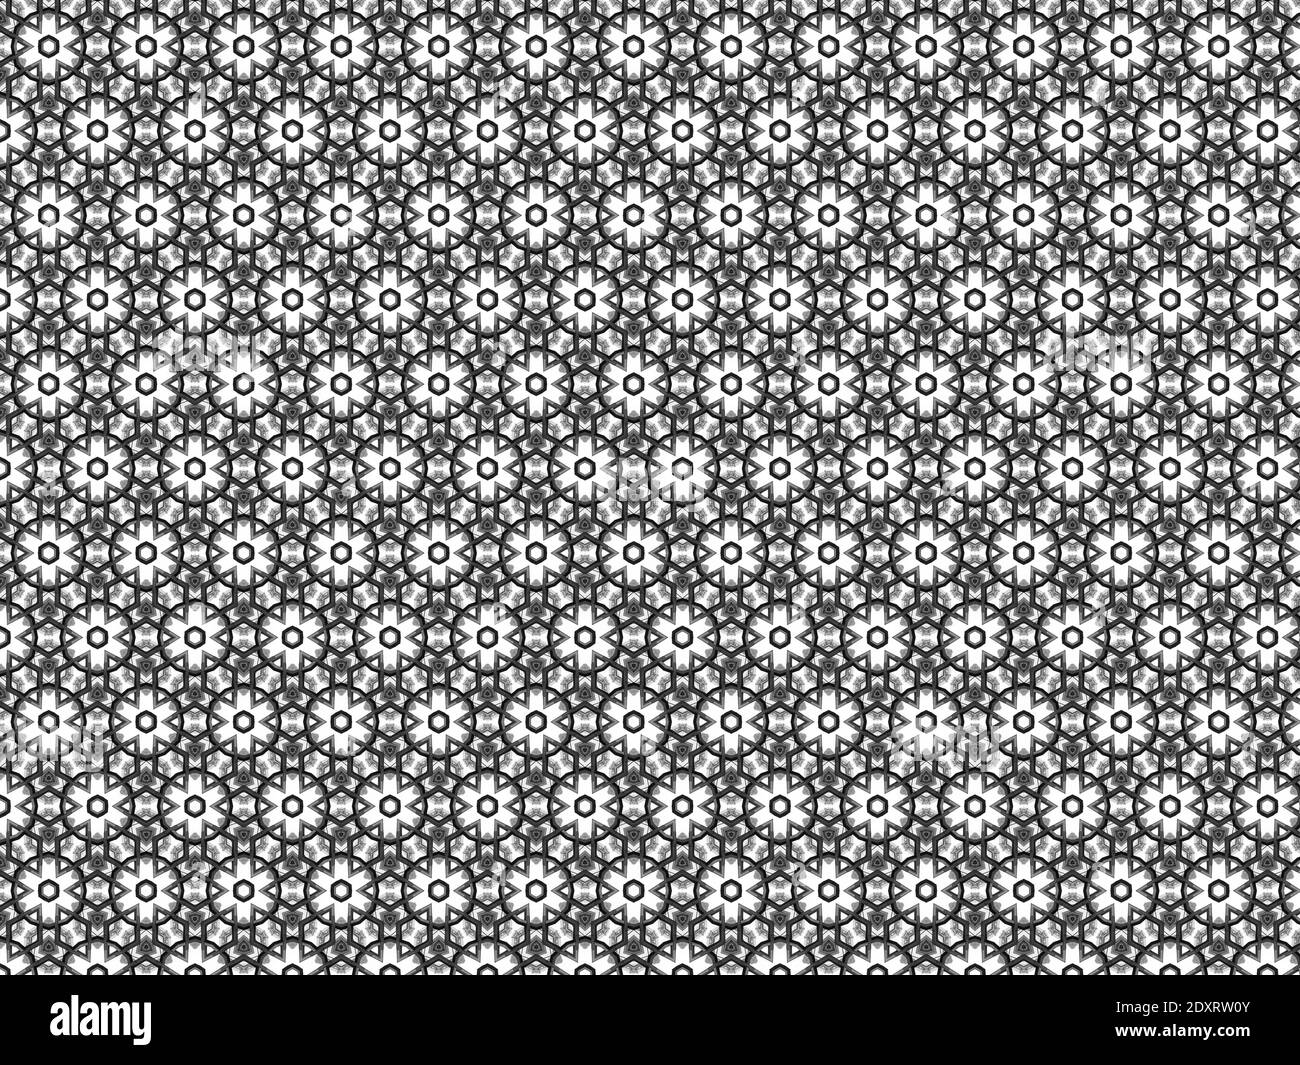 Schwarz nahtlose Sterne und Kreise Muster in schwarz auf weiß Hintergrund Stockfoto